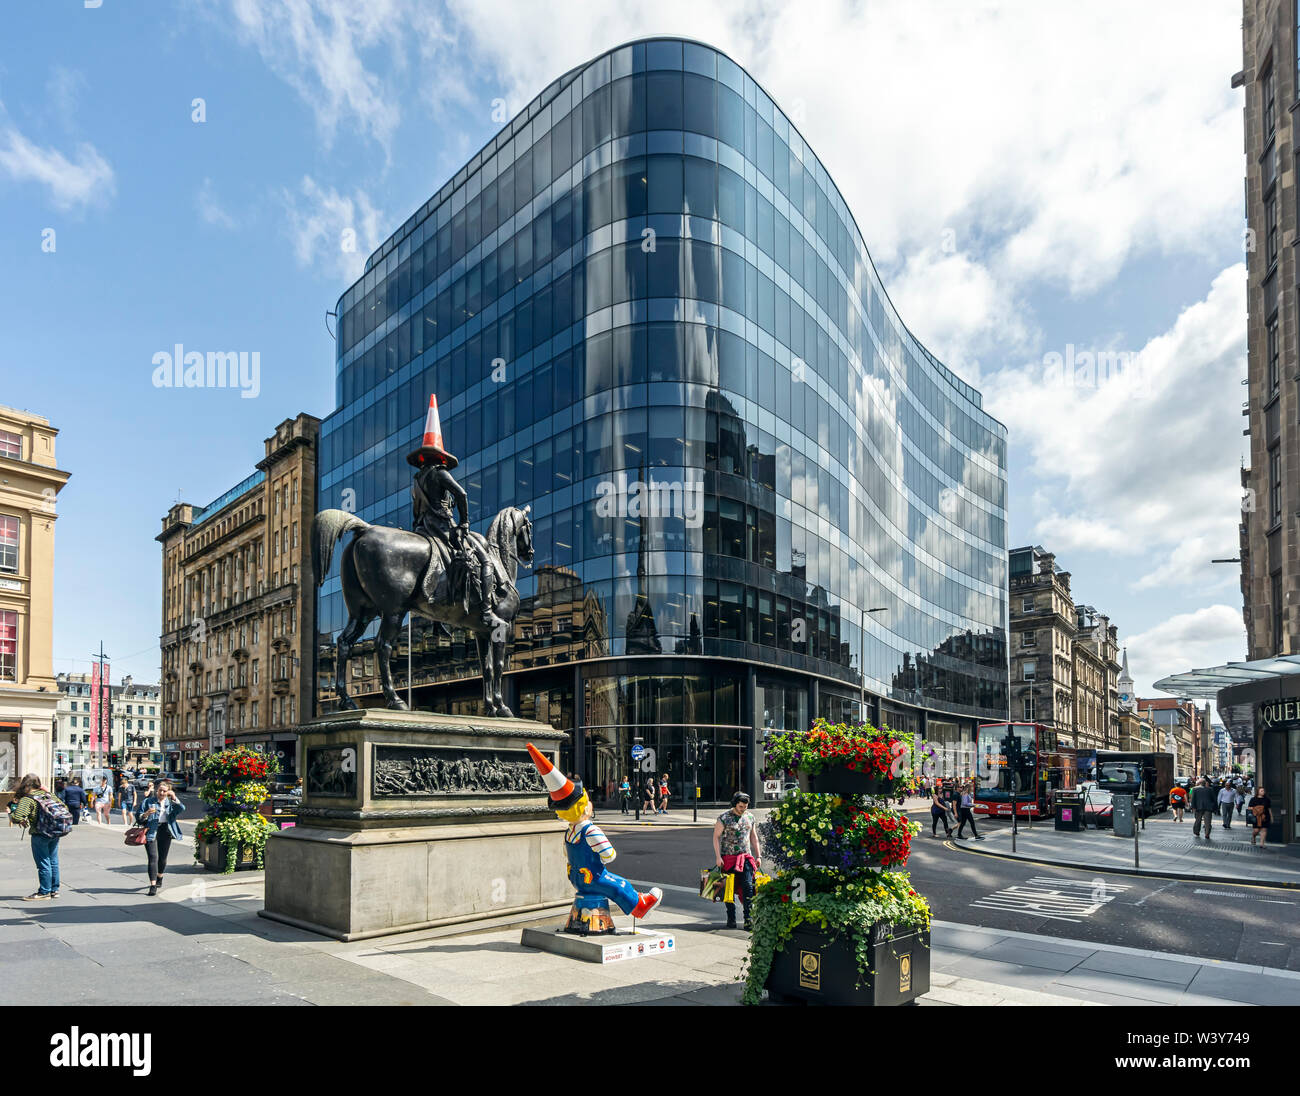 Bâtiment de bureaux 110, rue Queen, à l'angle de la rue Queen et Ingram Street dans le centre-ville de Glasgow Ecosse UK avec Wellington monument Banque D'Images